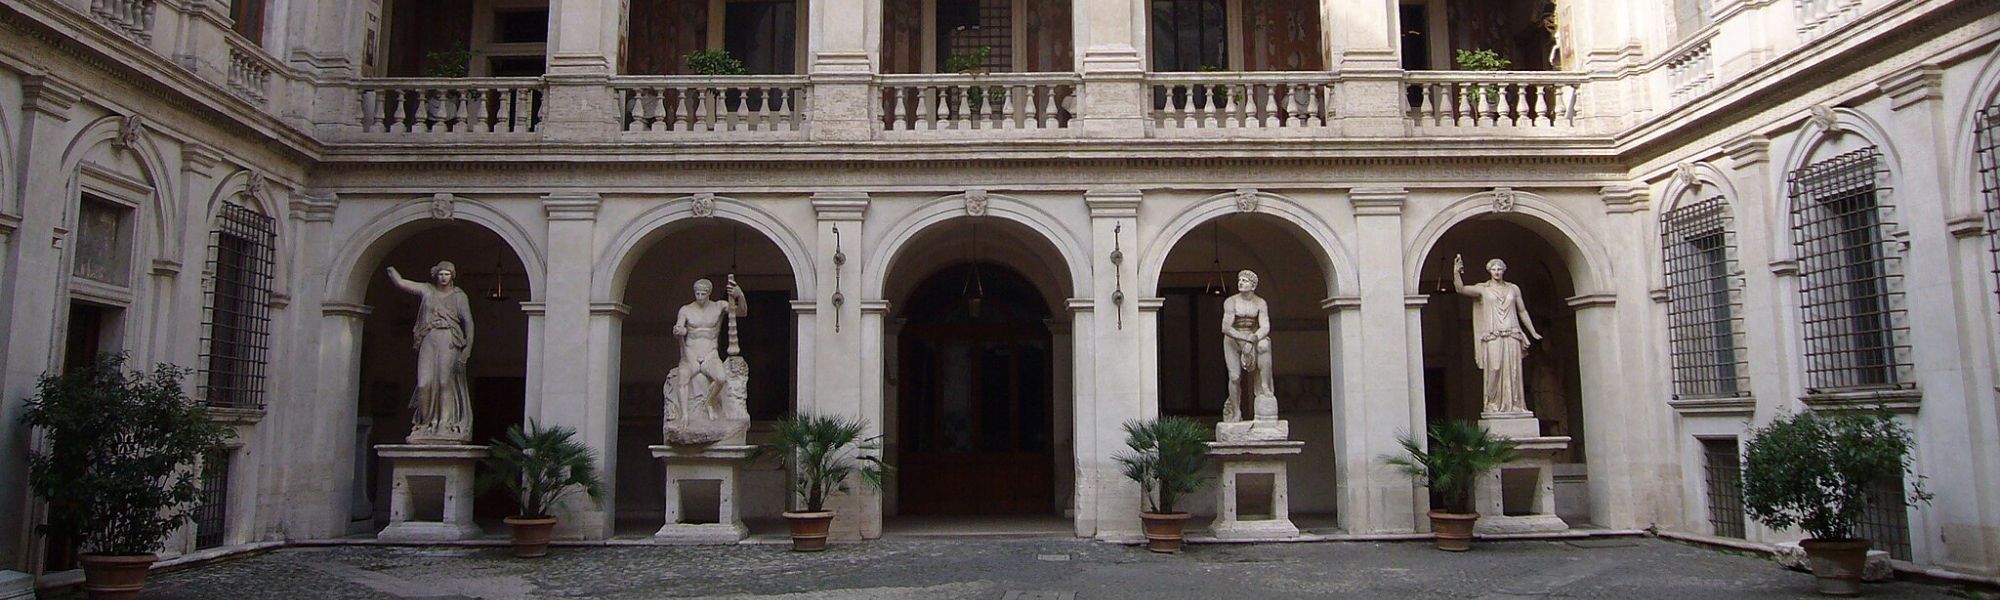 Palazzo Altemps, libro bianco per jacopo